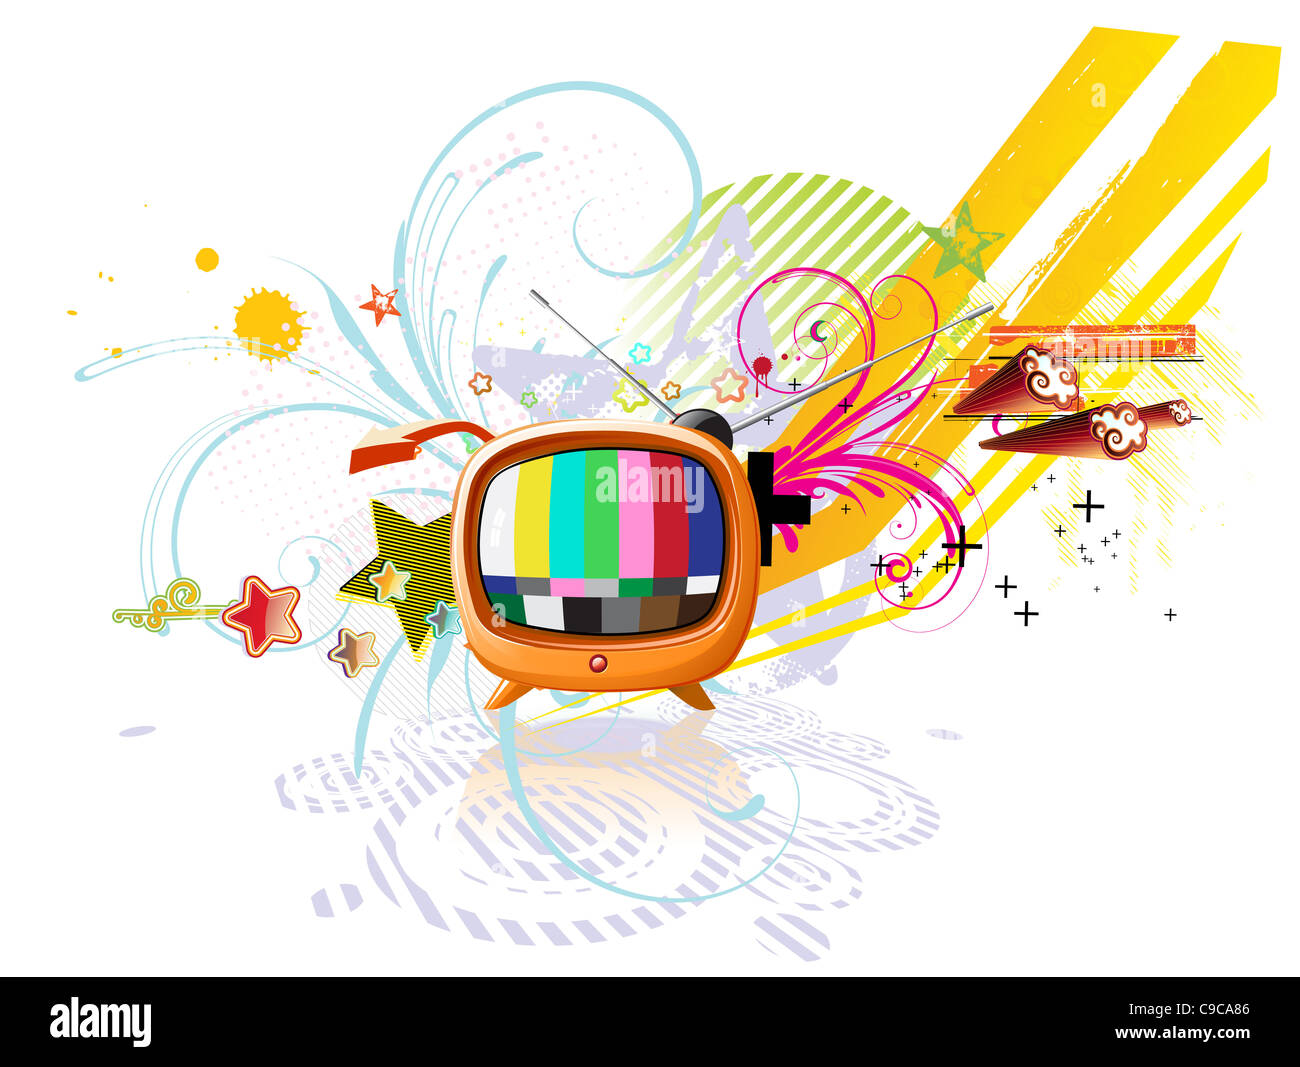 Illustrazione di funky sfondo astratto con cool TV retrò Foto Stock